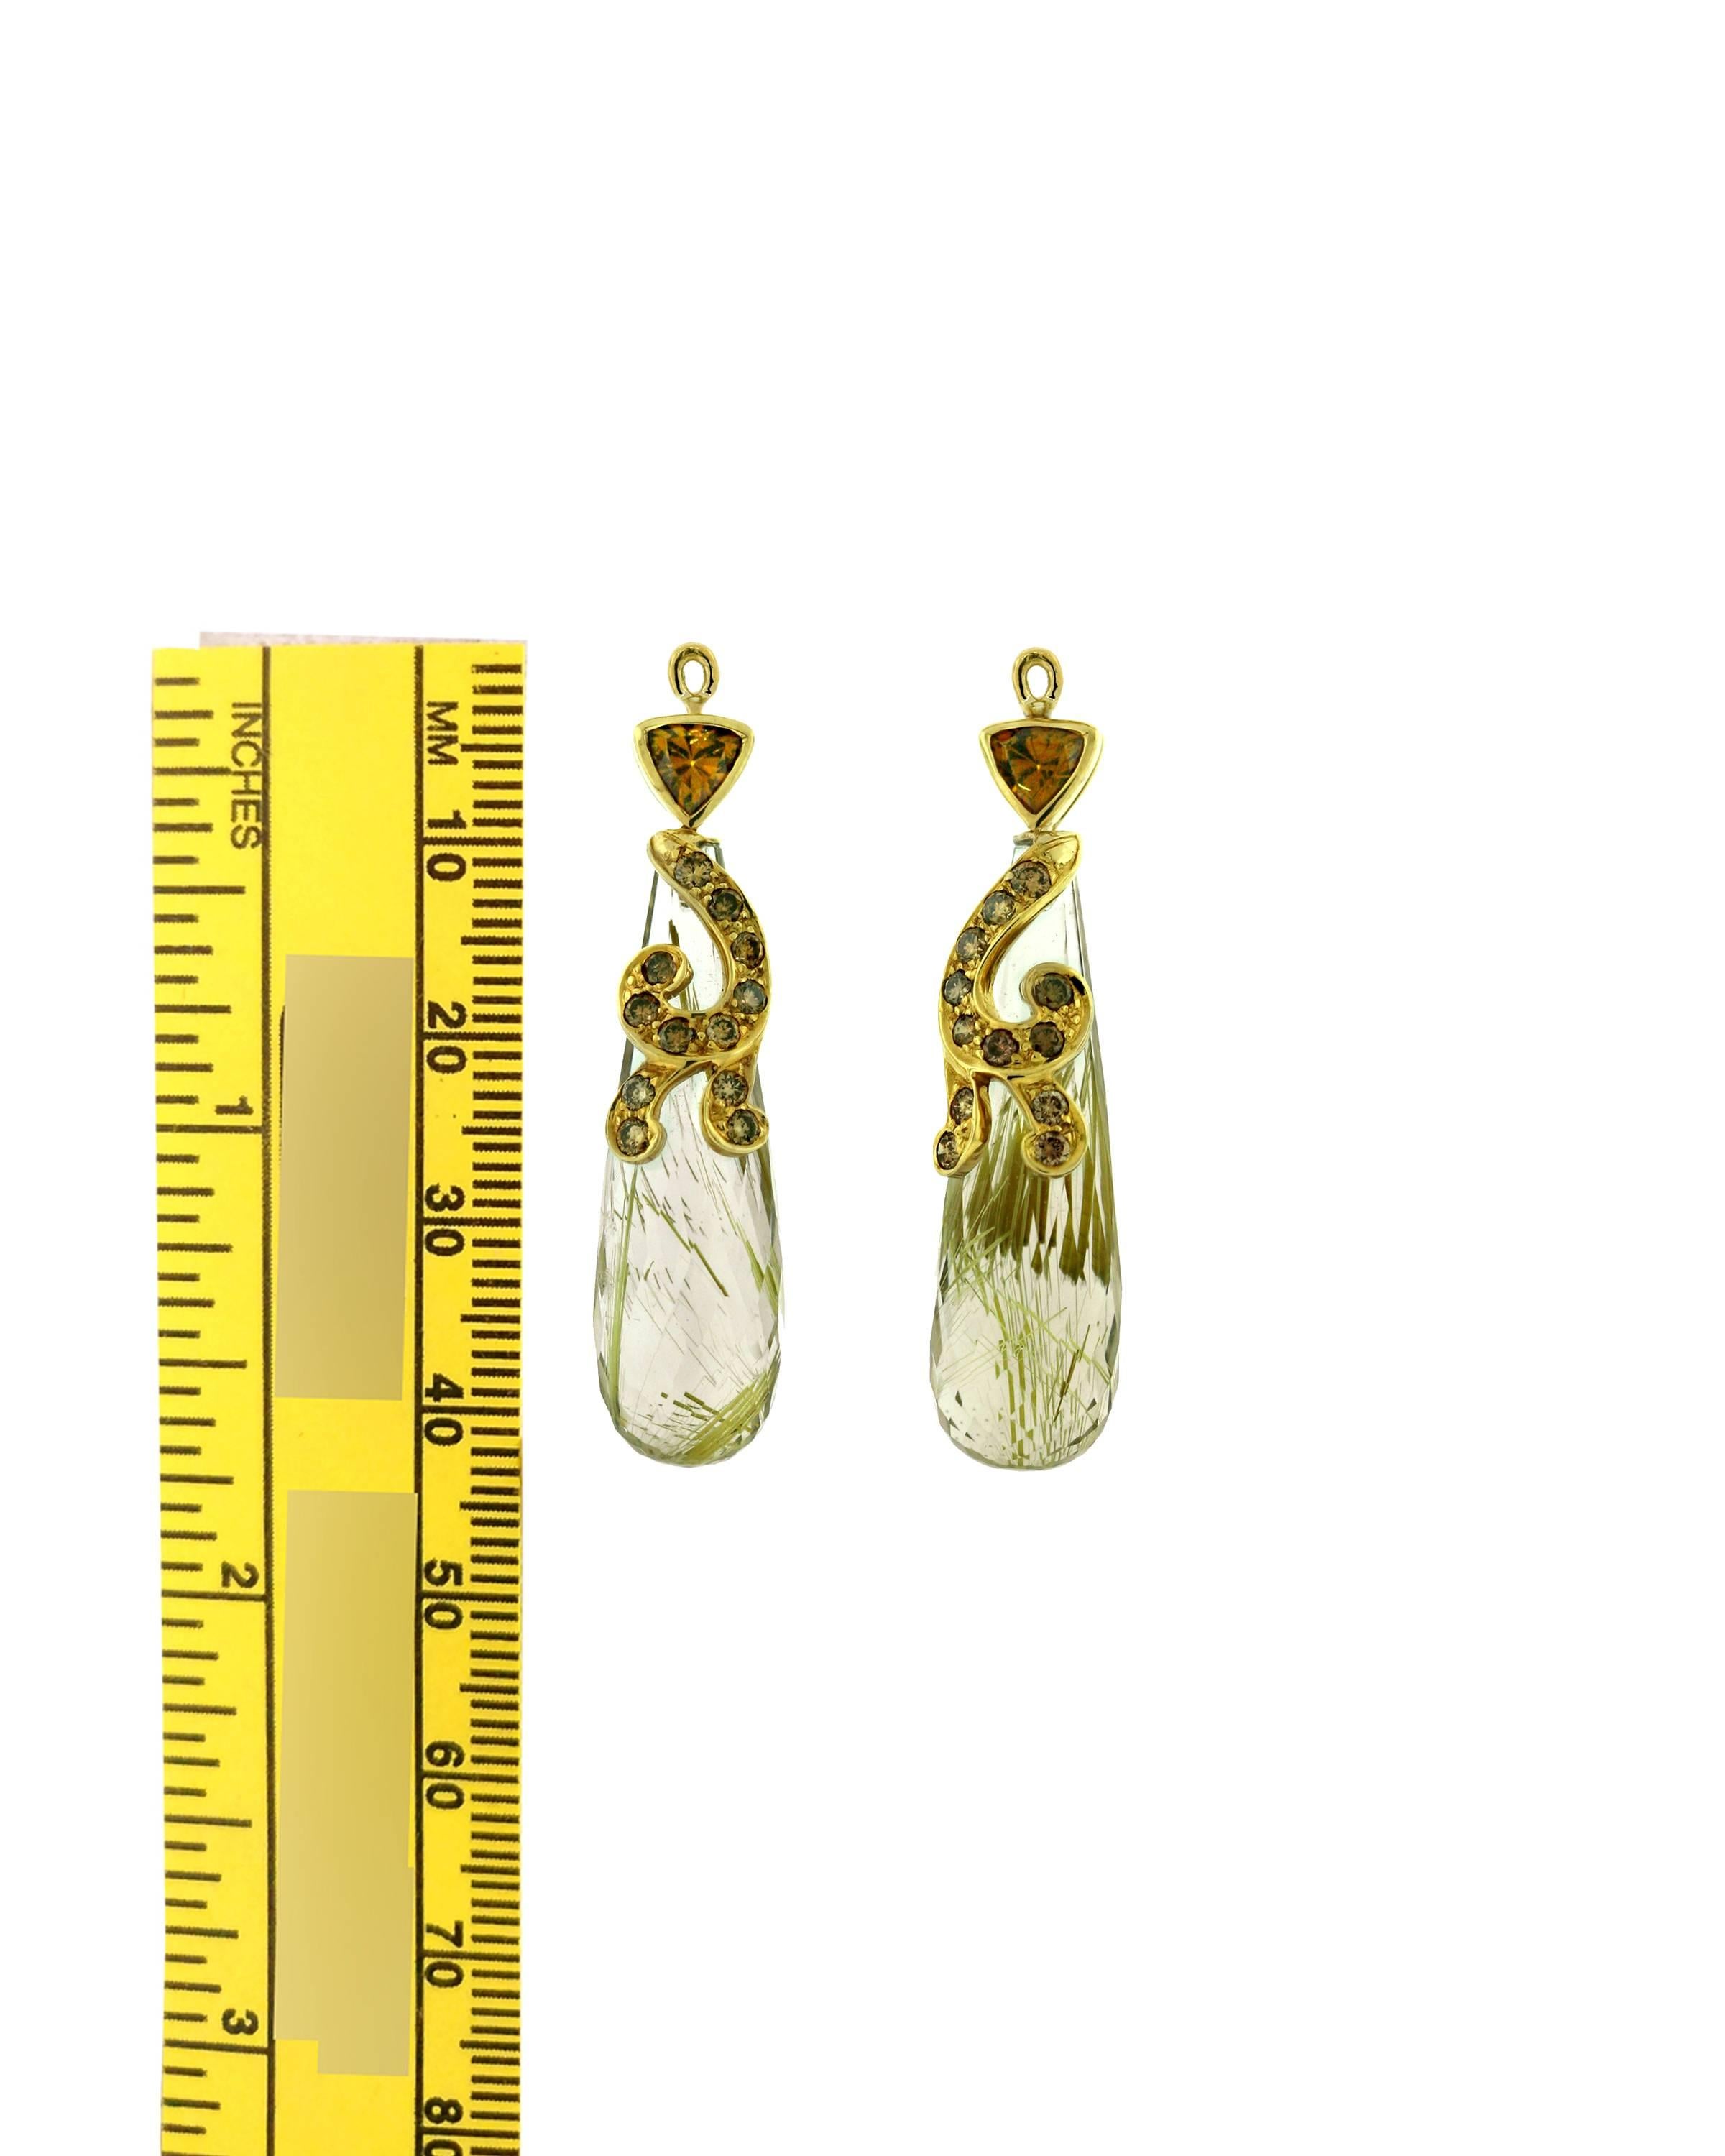 Crevoshay handmade versatile earring drops with rutilated quartz= 39.88ct., brown diamond swirls = 0.61ct. and garnet = 1.02ct.  18k yellow gold.